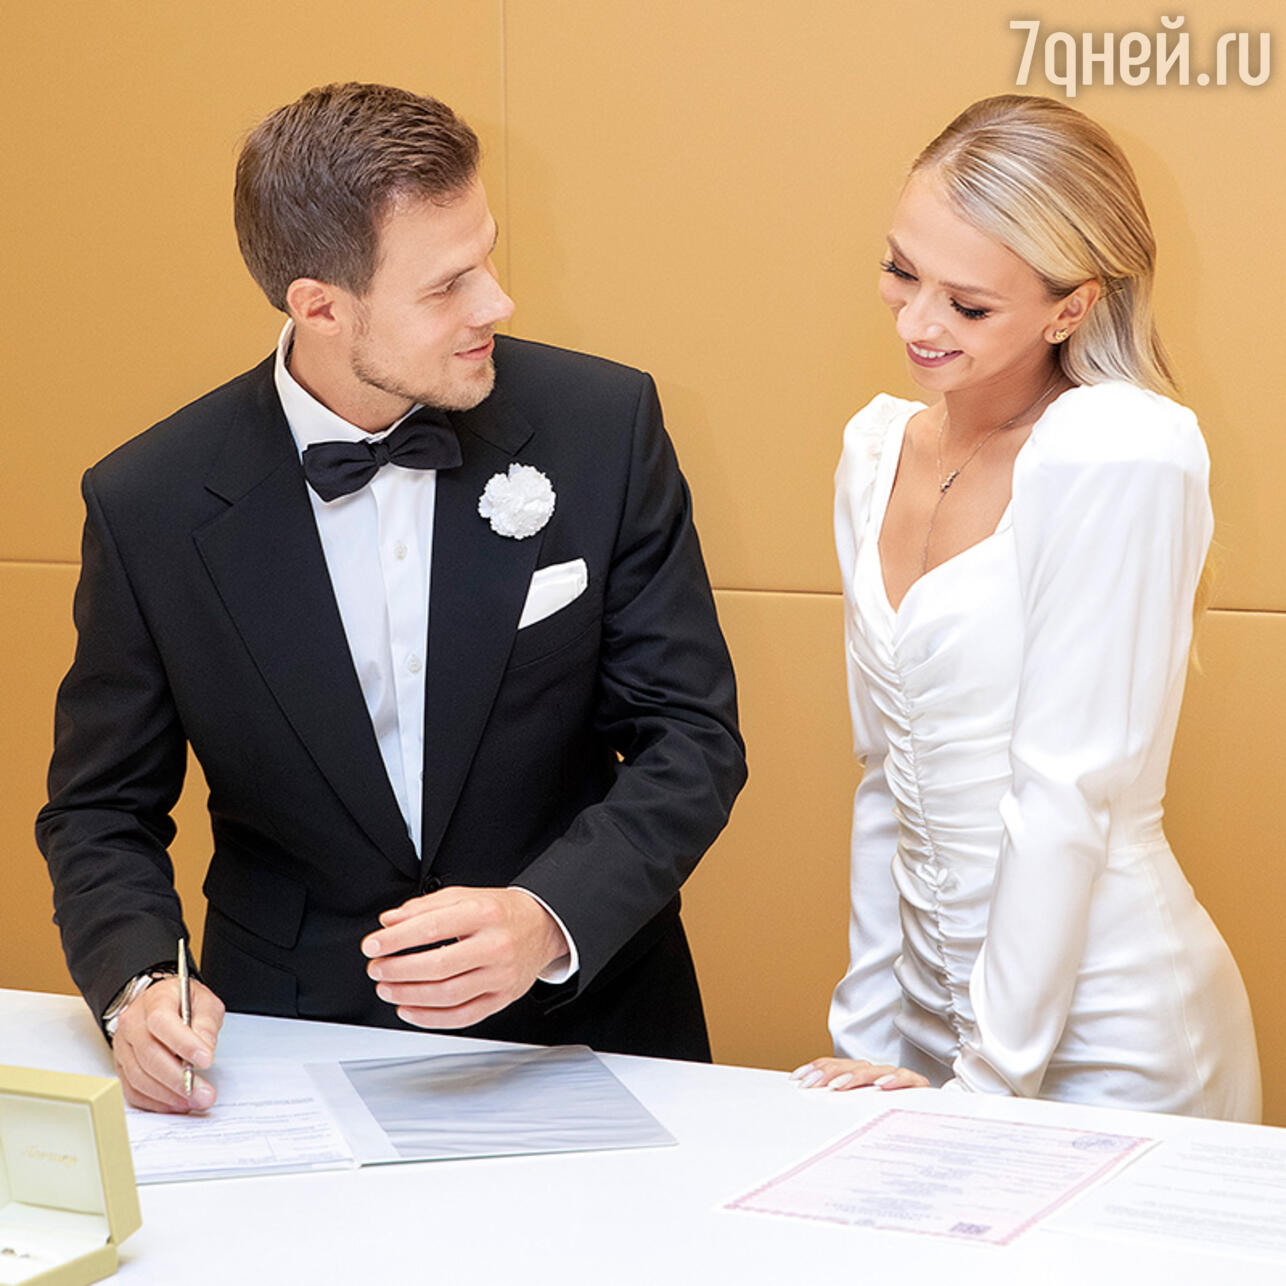 Синицына И Кацалапов Свадьба Фото